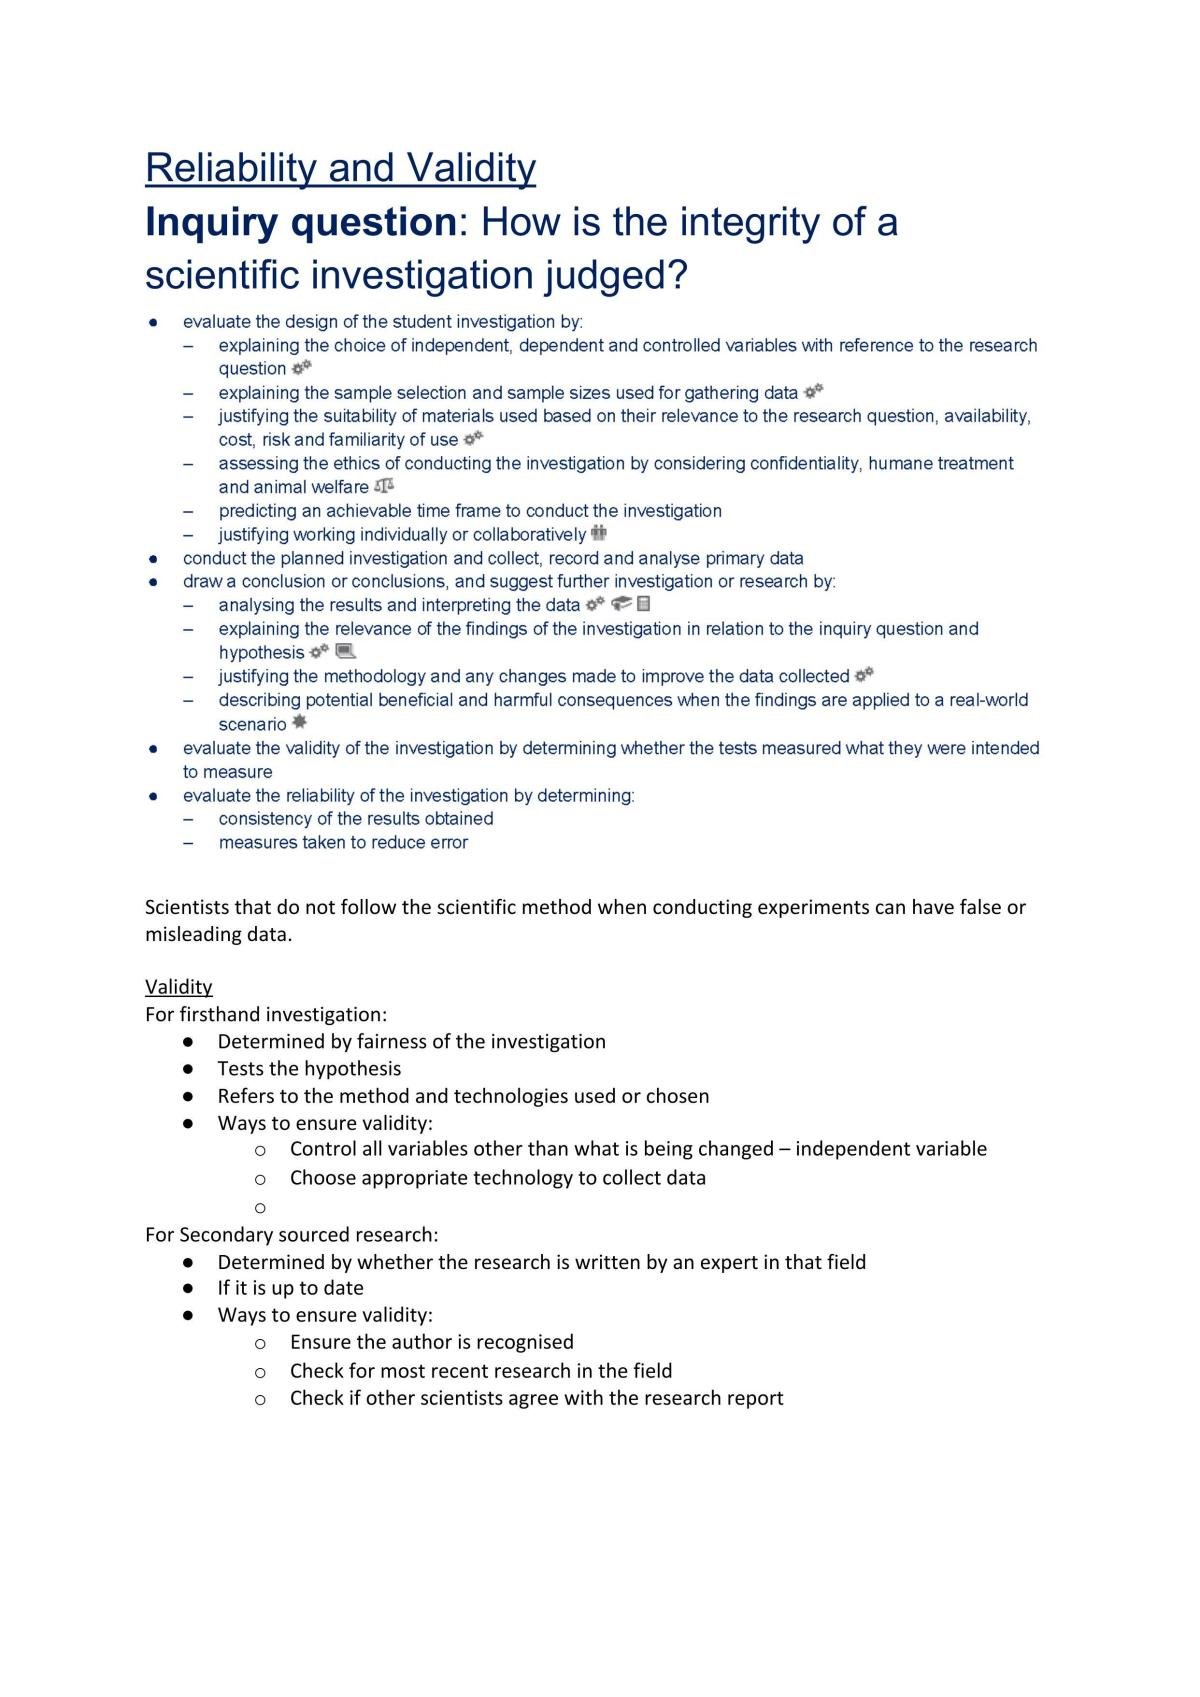 Module 5: Scientific Investigations - Page 15